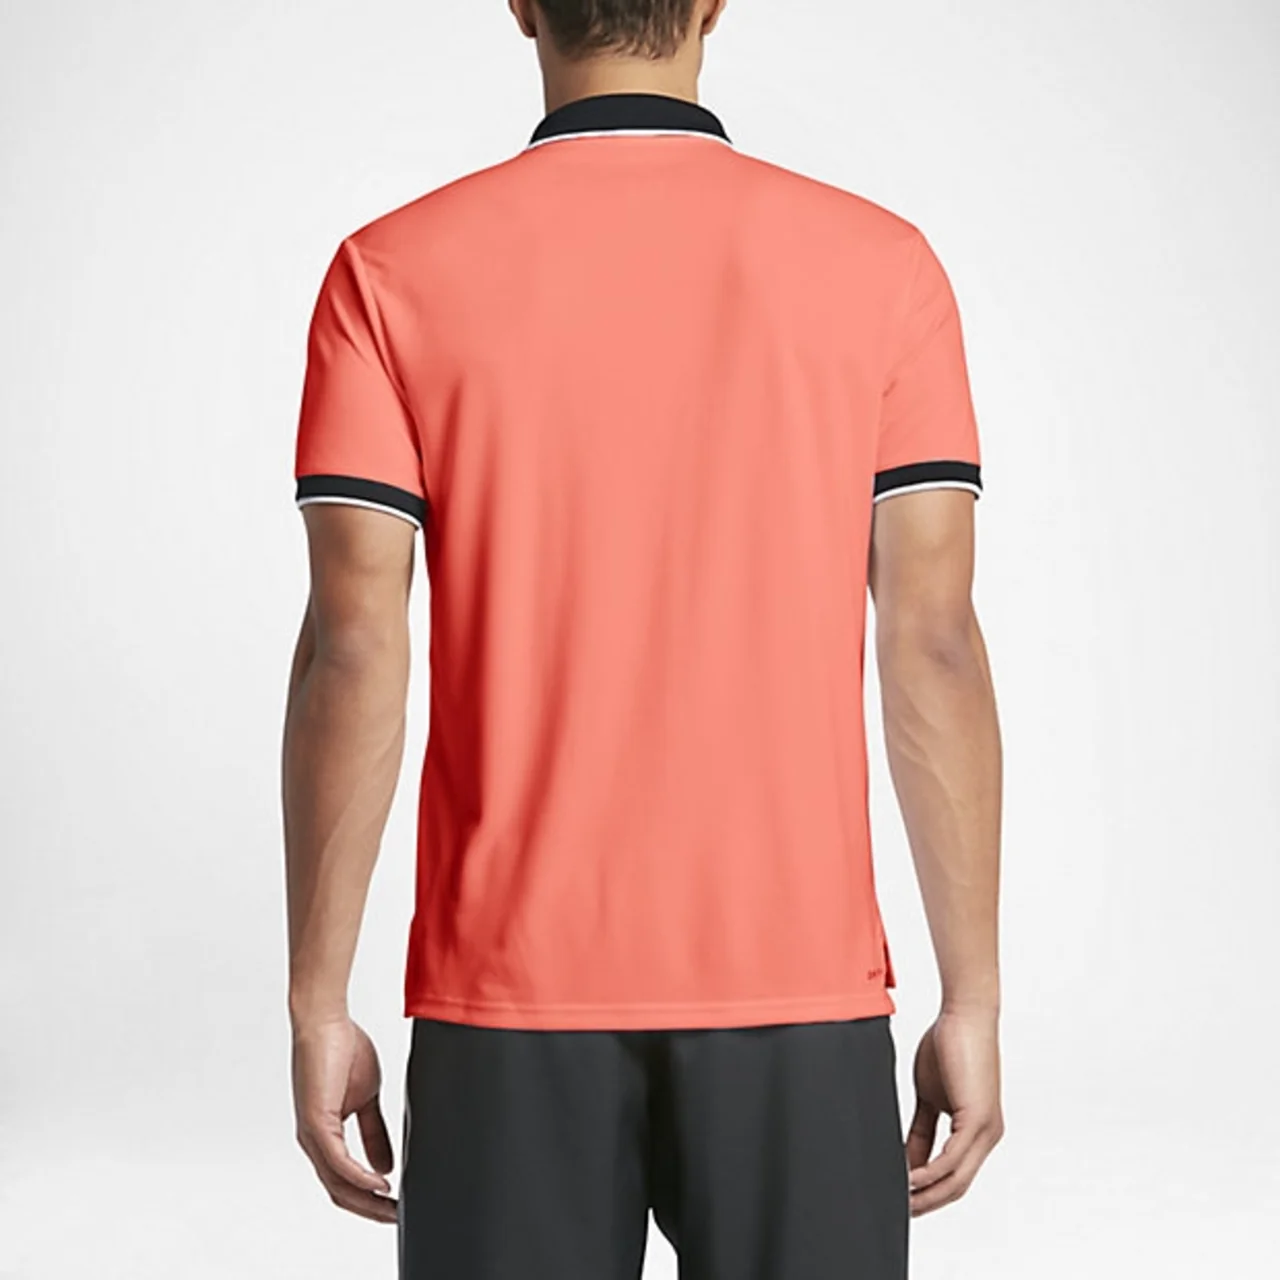 Nike Dry Team Polo Orange/Black Size S